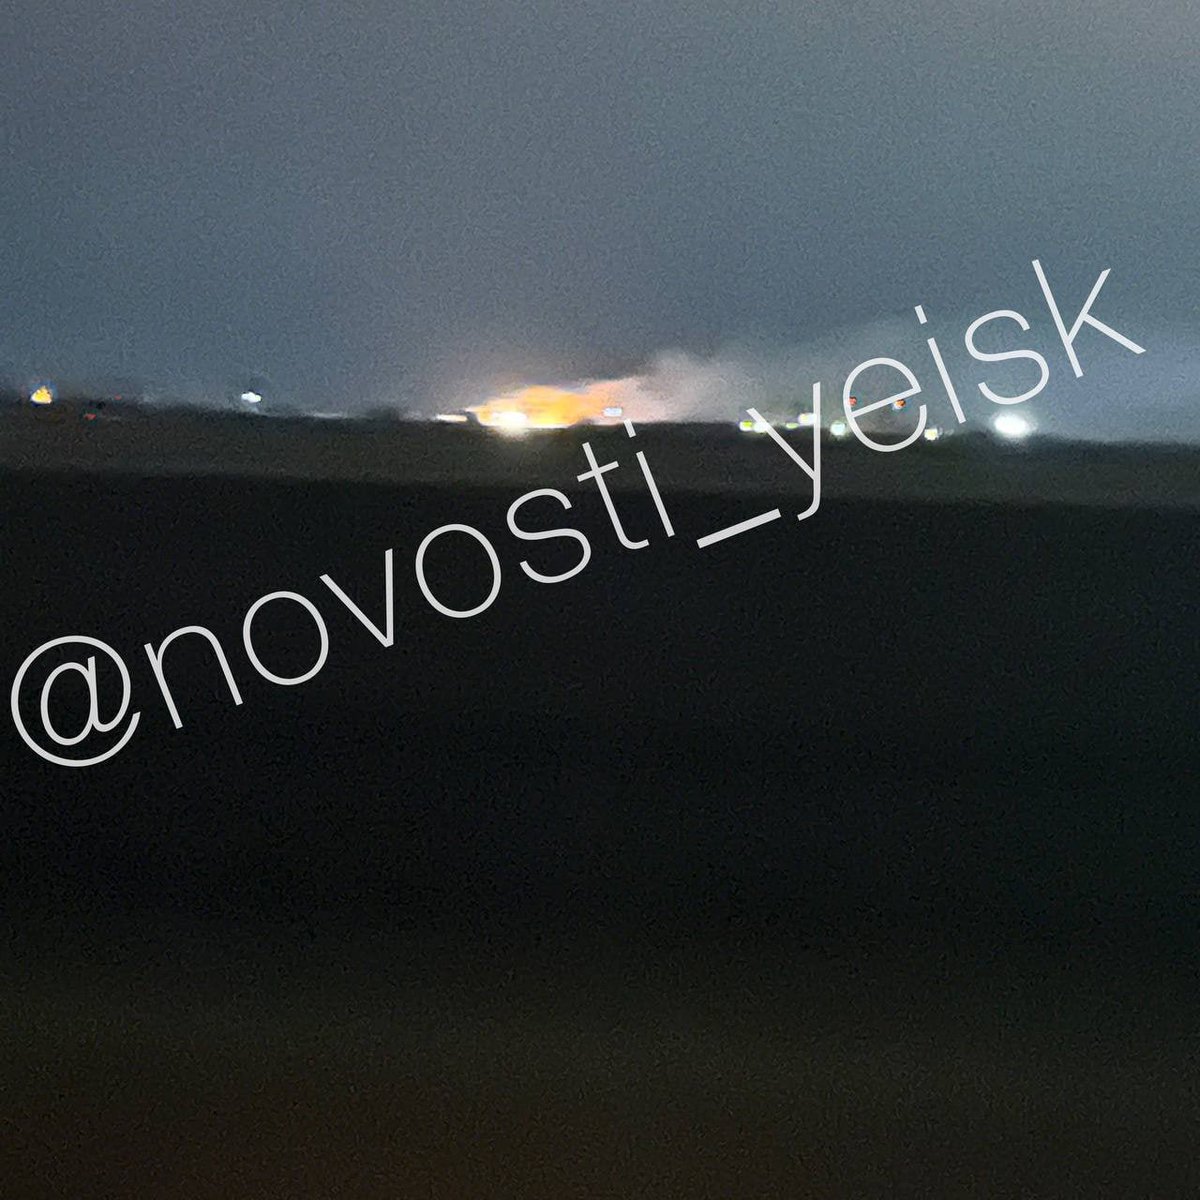 Πυρκαγιά και εκρήξεις σημειώθηκαν κοντά στην αεροπορική βάση στο Yeysk, Krasnodar Krai